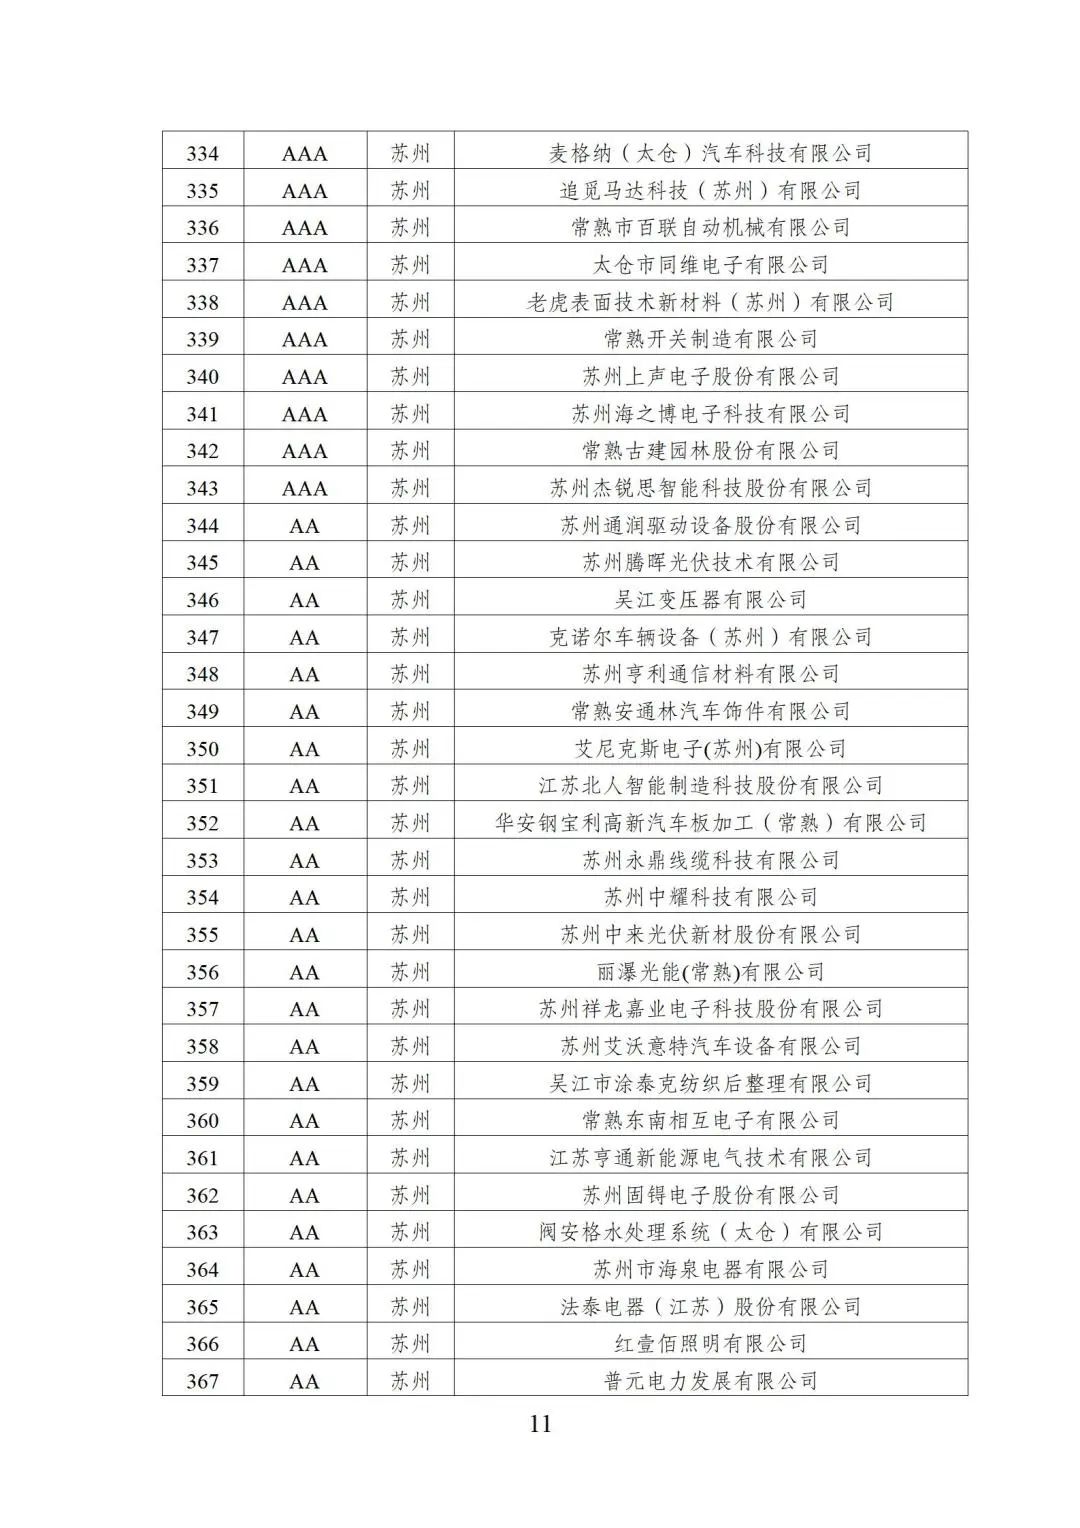 2022年江苏省两化融合管理体系贯标示范企业培育对象名单11.jpg